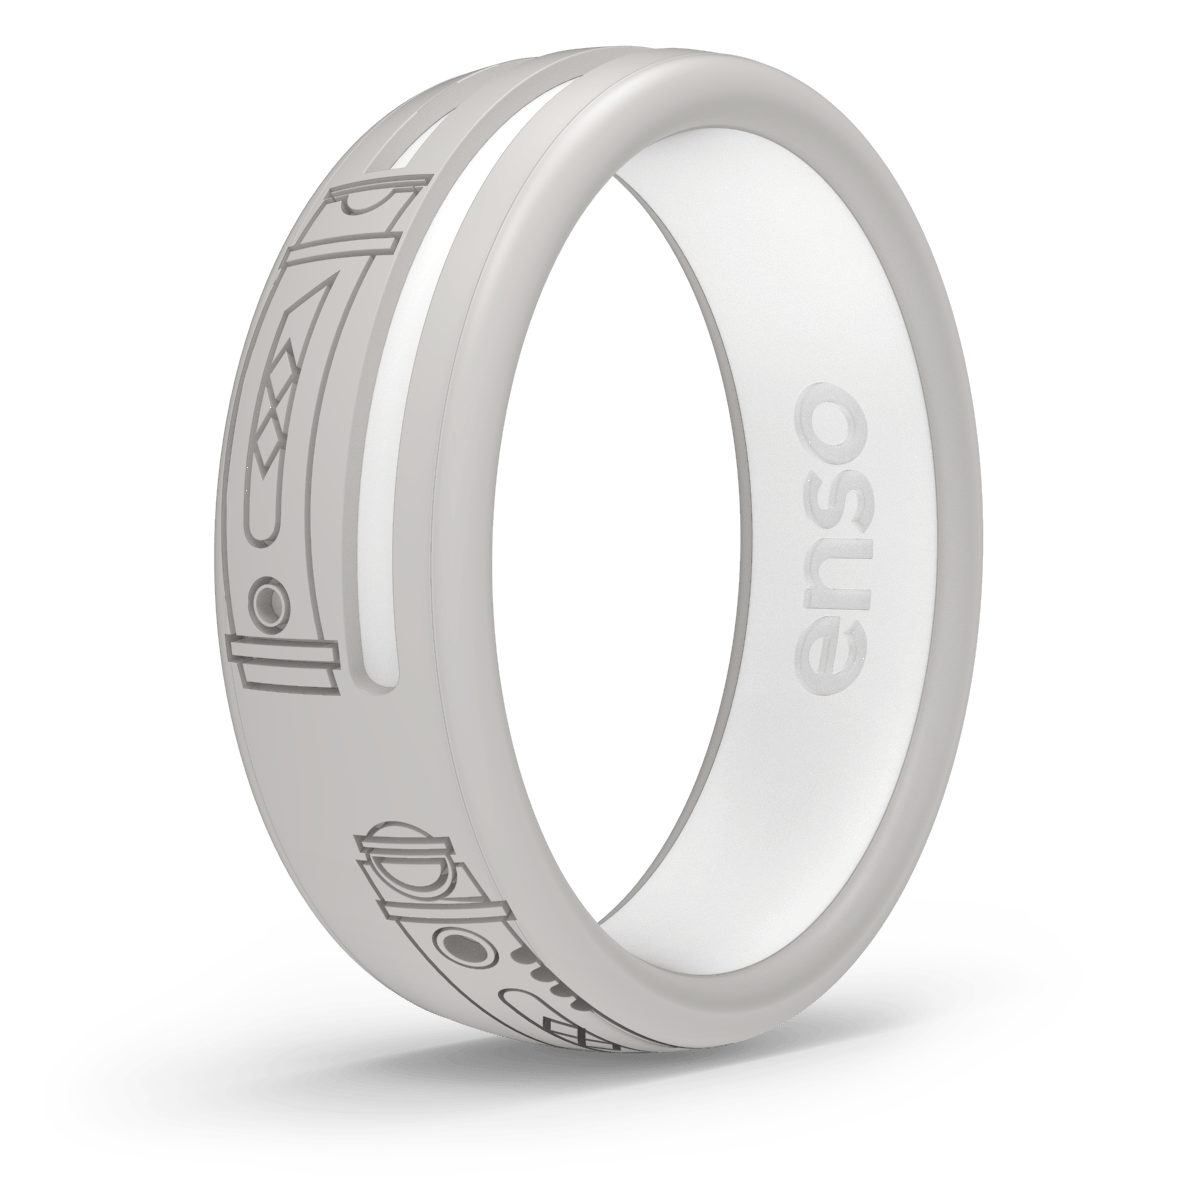 Enso Rings Brings Safe Ahsoka Themed Rings! - Nerd News Social